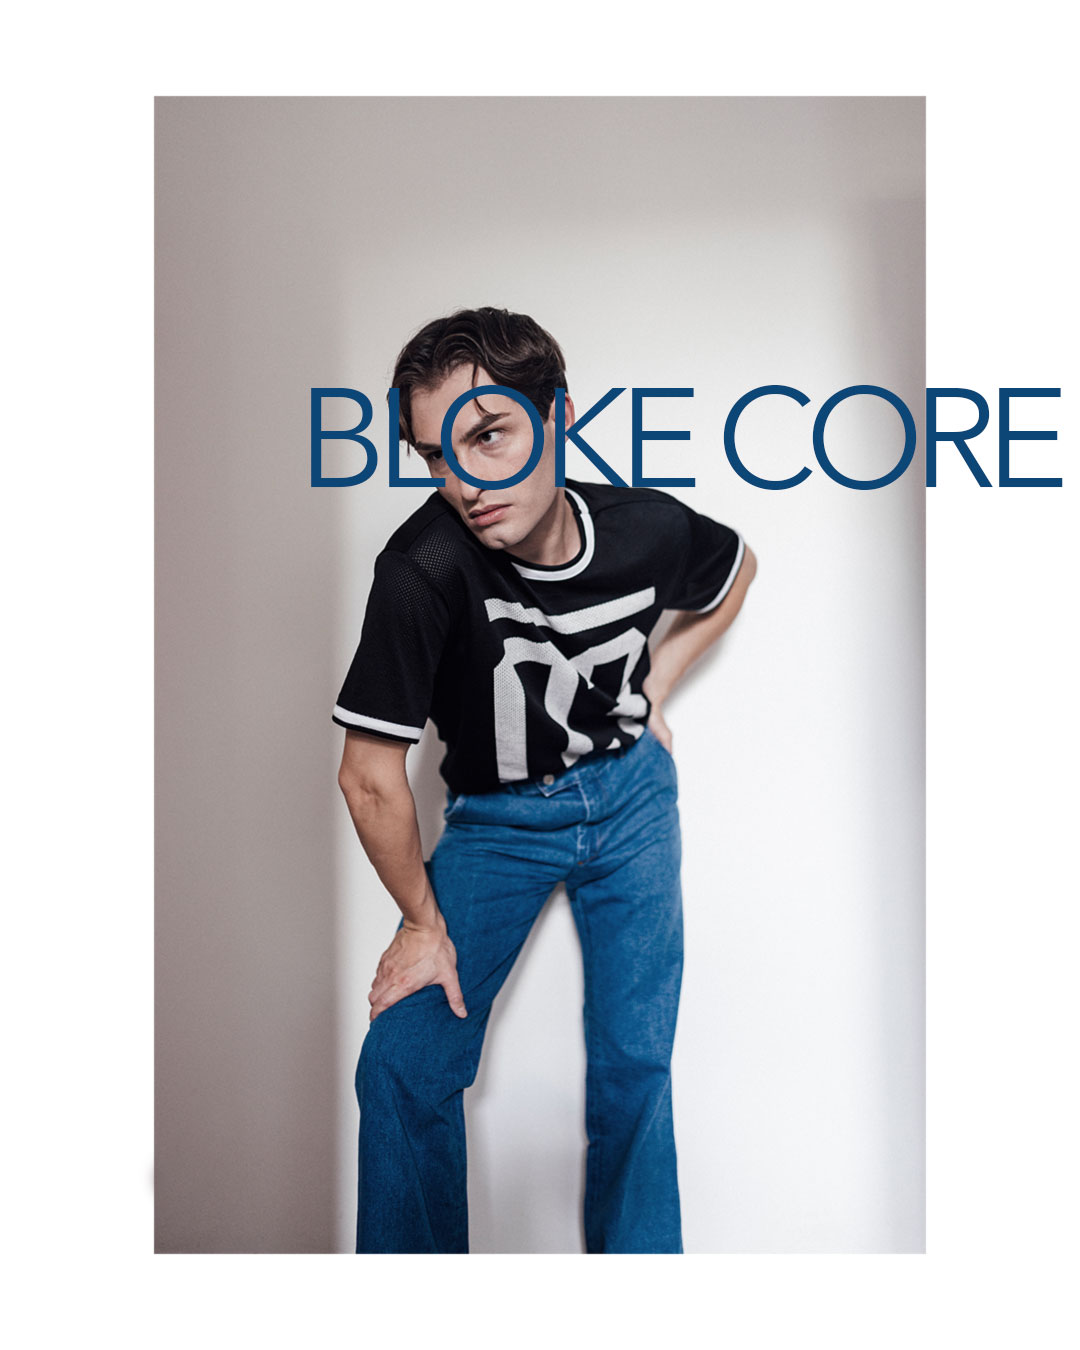 Modetrend Bloke Core für Männer.